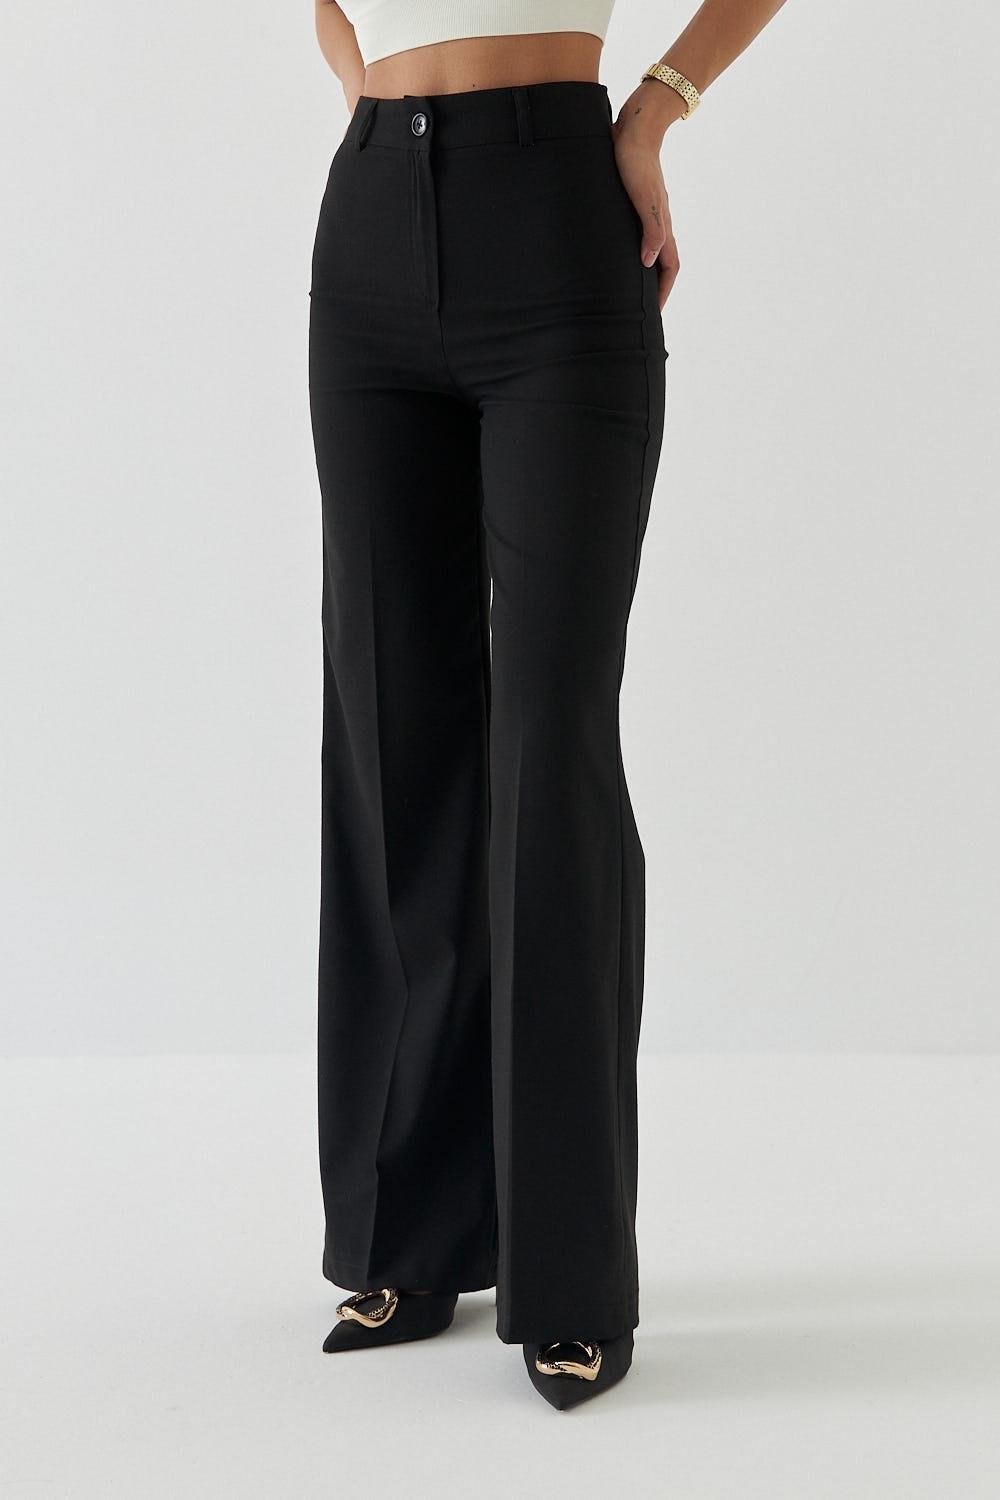 Yüksek Bel Düz Kesim Siyah Kadın Kumaş Pantolon | Lathine